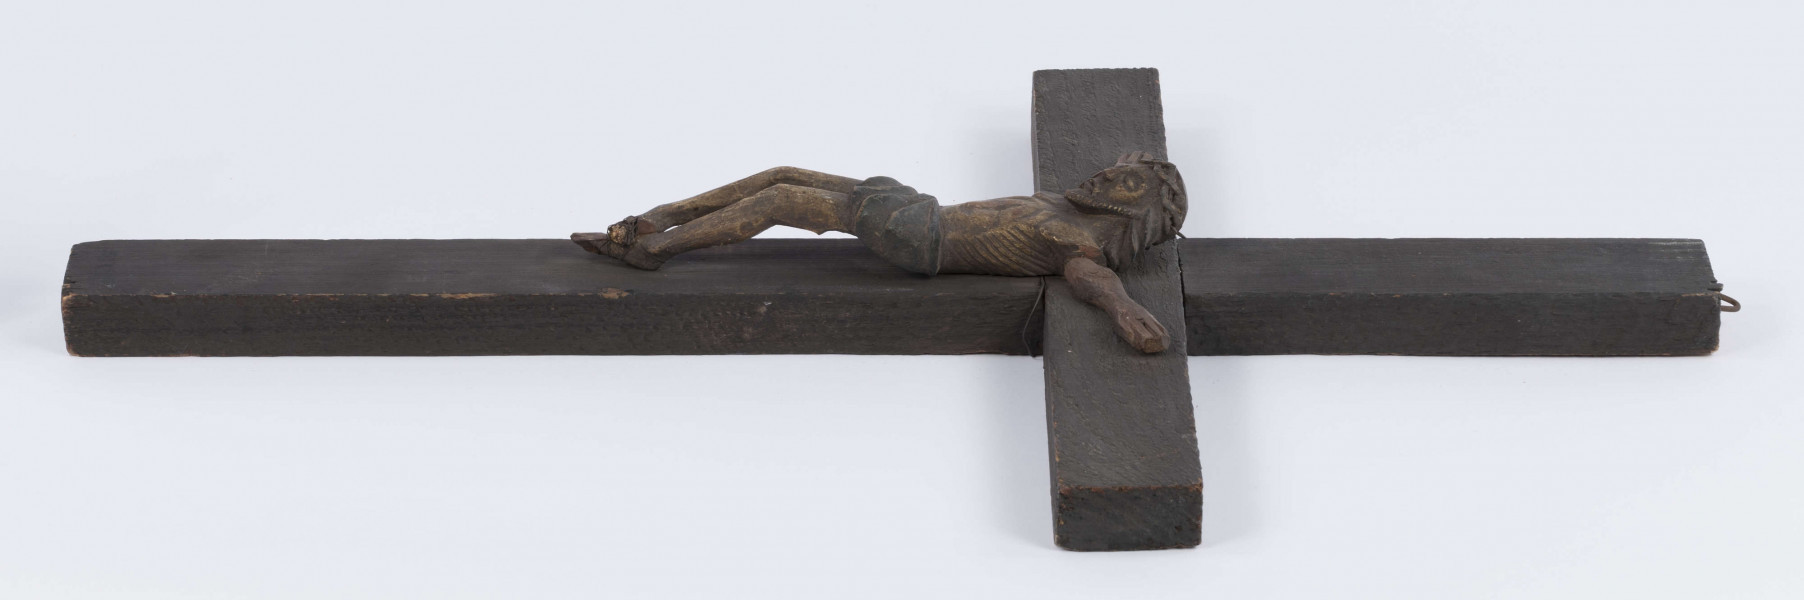 E/371/ML - Rzeźba w drewnie przedstawiająca Chrystusa Ukrzyżowanego na krzyżu sosnowym. Głowa w cierniowej koronie, schylona lekko w prawa stronę. Ciało nagie. Polichromowana, kolor brązowy. Ręce nieudolnie dorobione przez innego rzeźbiarza, z innego drewna. 